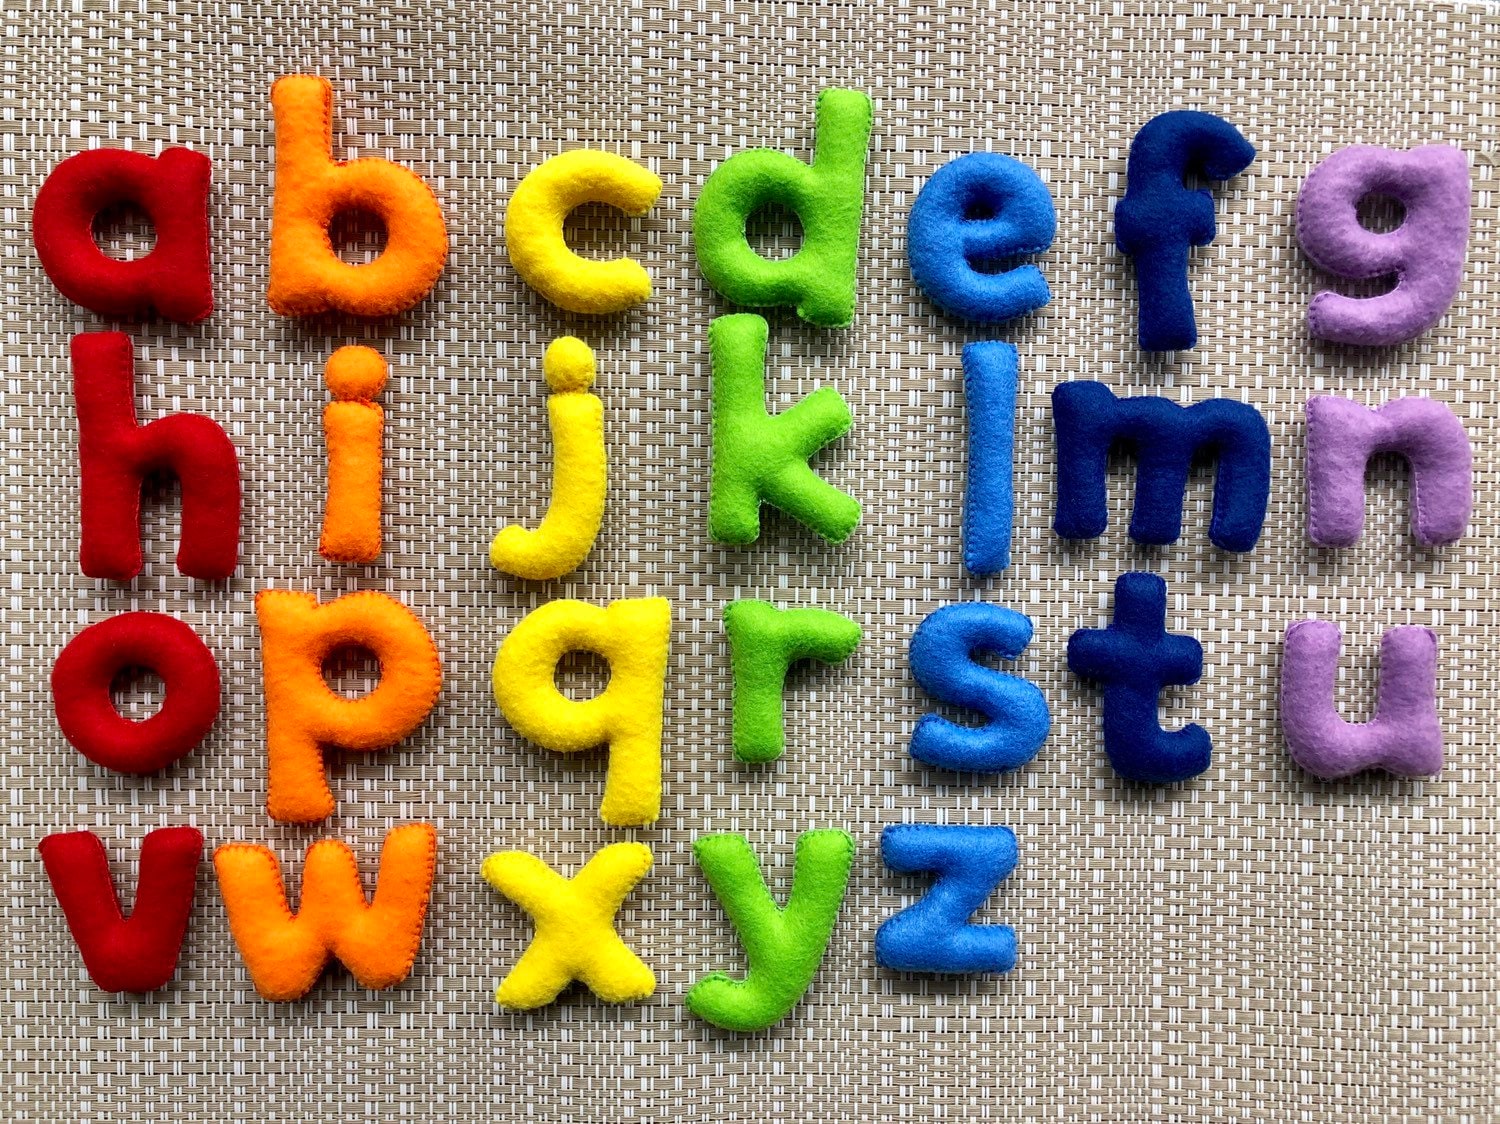 Felt Alphabet Letters Lowercase, Nursery Letters, Name Banner